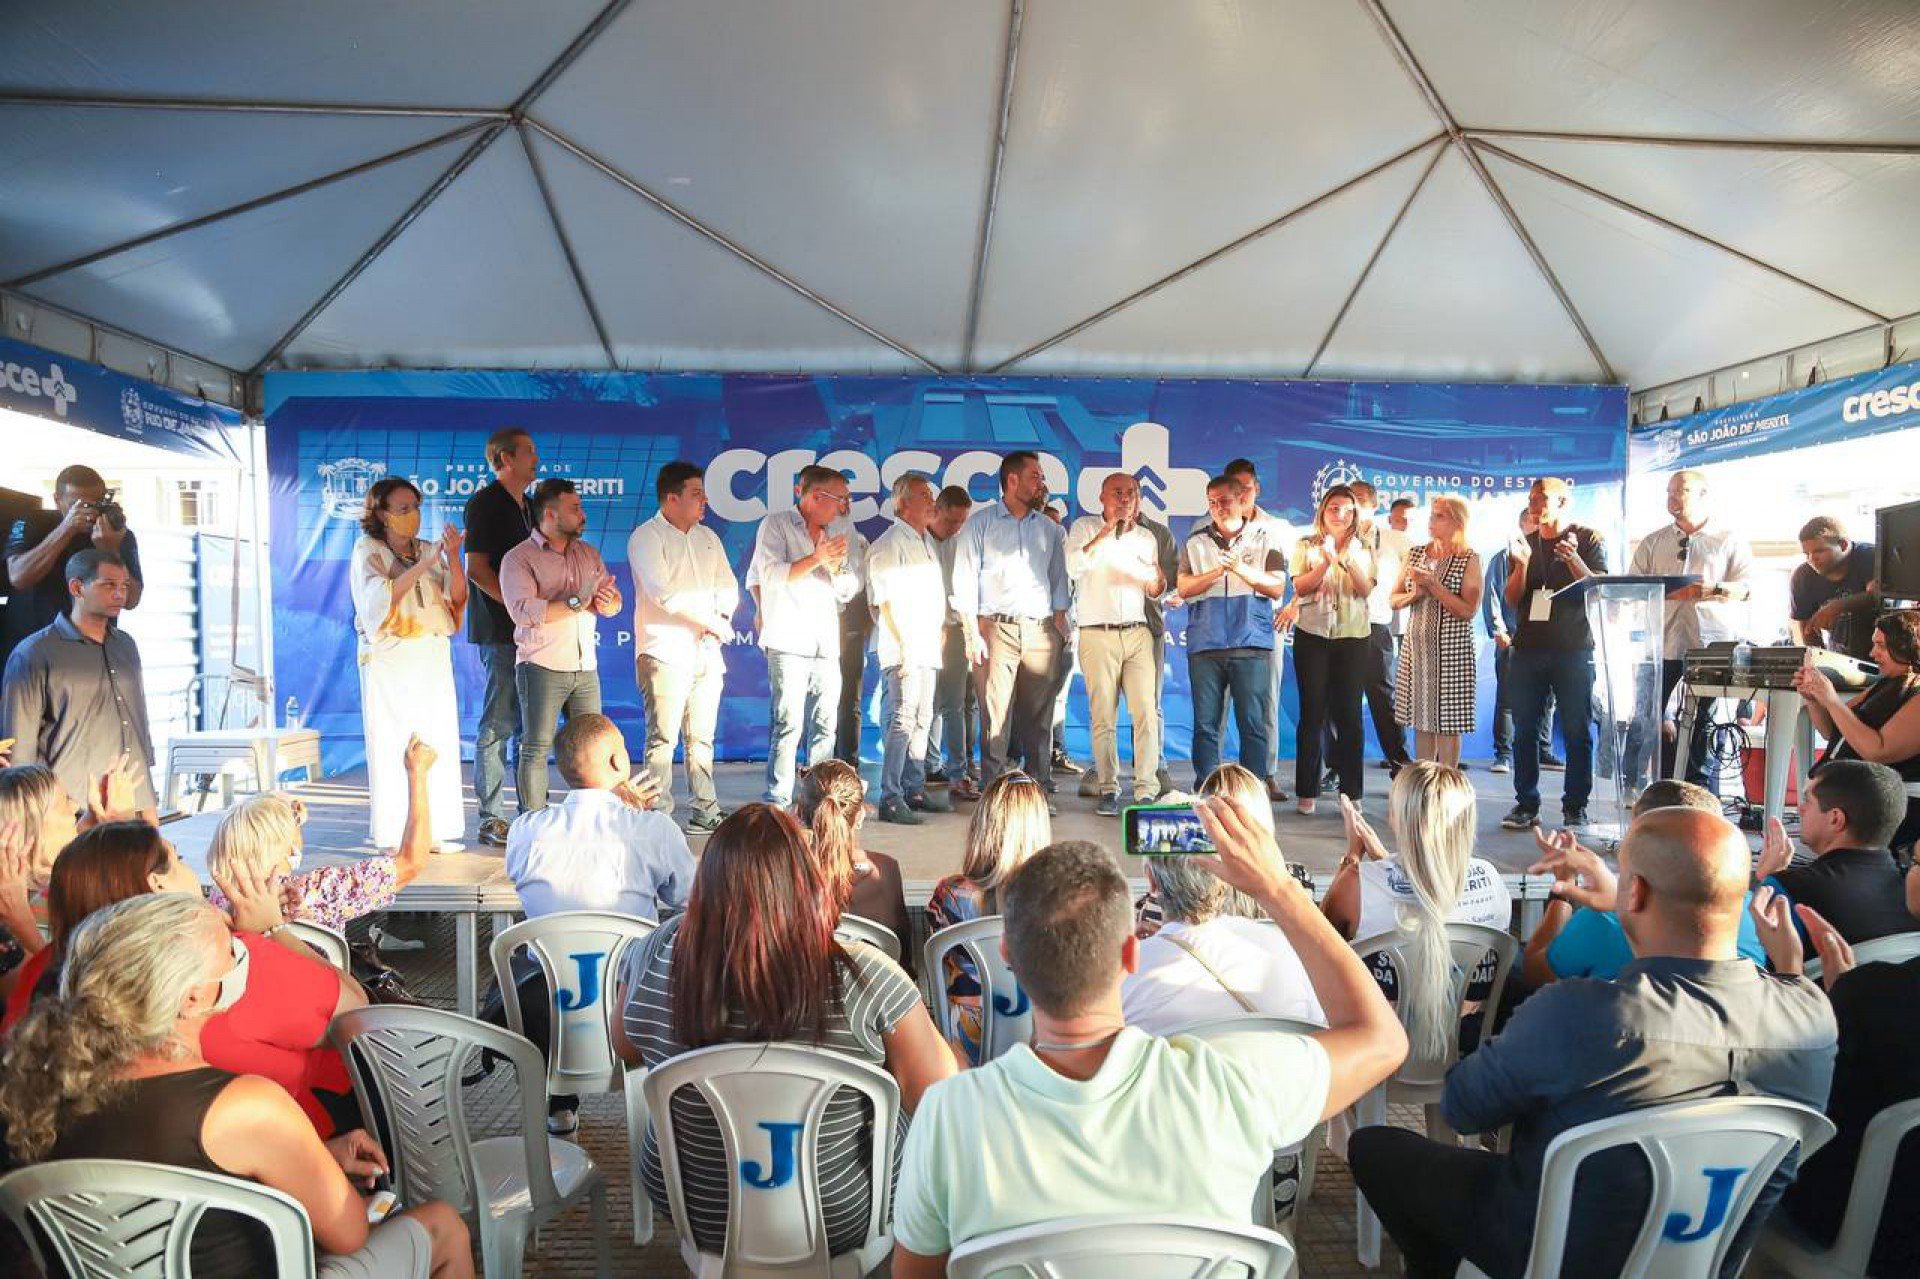 Meriti recebeu o governador Cláudio Castro e apresentou o projeto Cresce mais Meriti, o maior programa de investimento de obras da cidade - Divulgação/ PMSJM